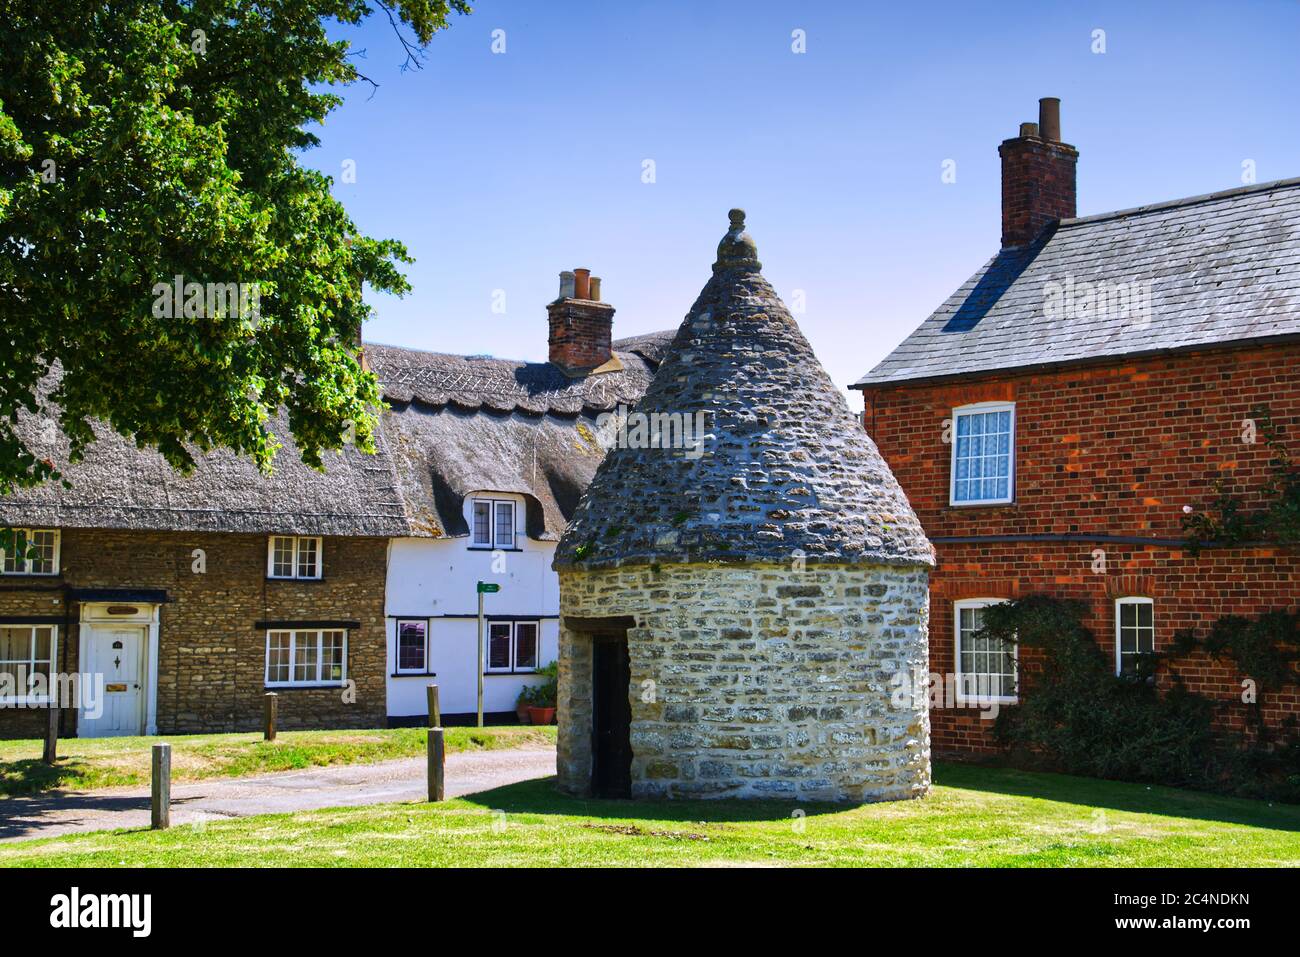 Il vecchio villaggio Lock Up Jail o Blind House circondato da cottage sul verde in Harrold, Bedfordshire, Regno Unito Foto Stock